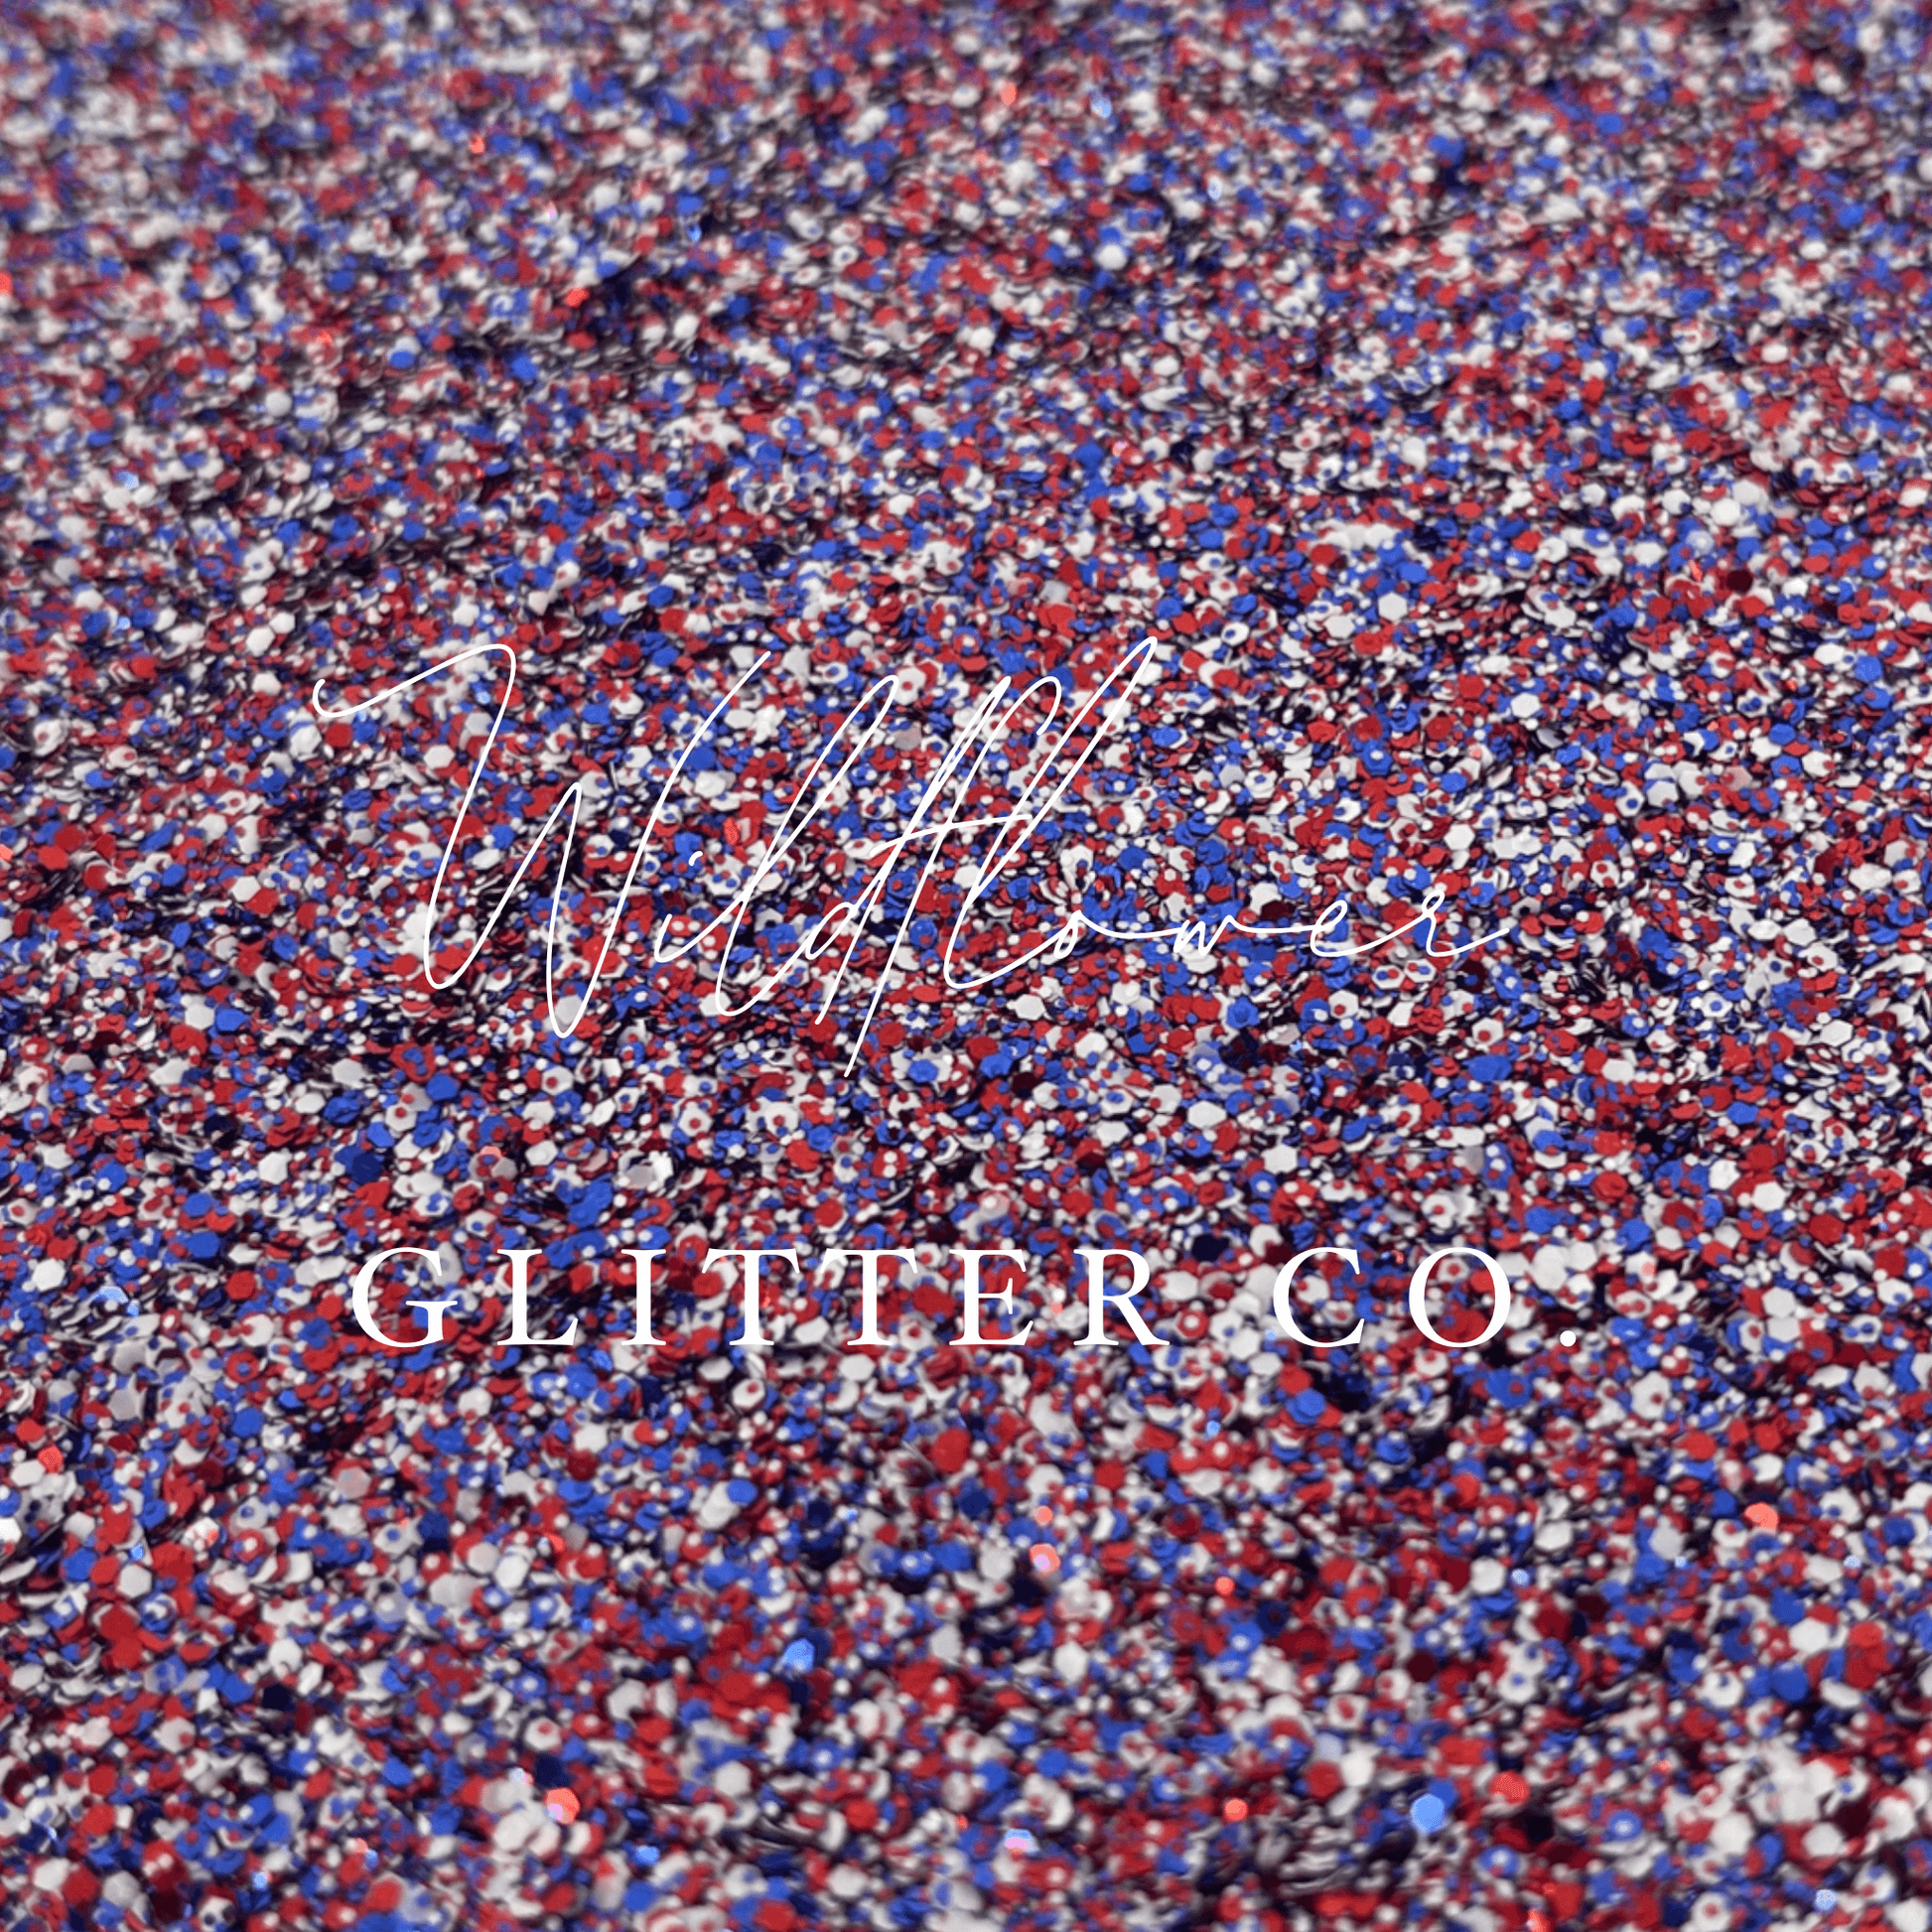 Shape Glitter – Wildflower Glitter Co. LLC